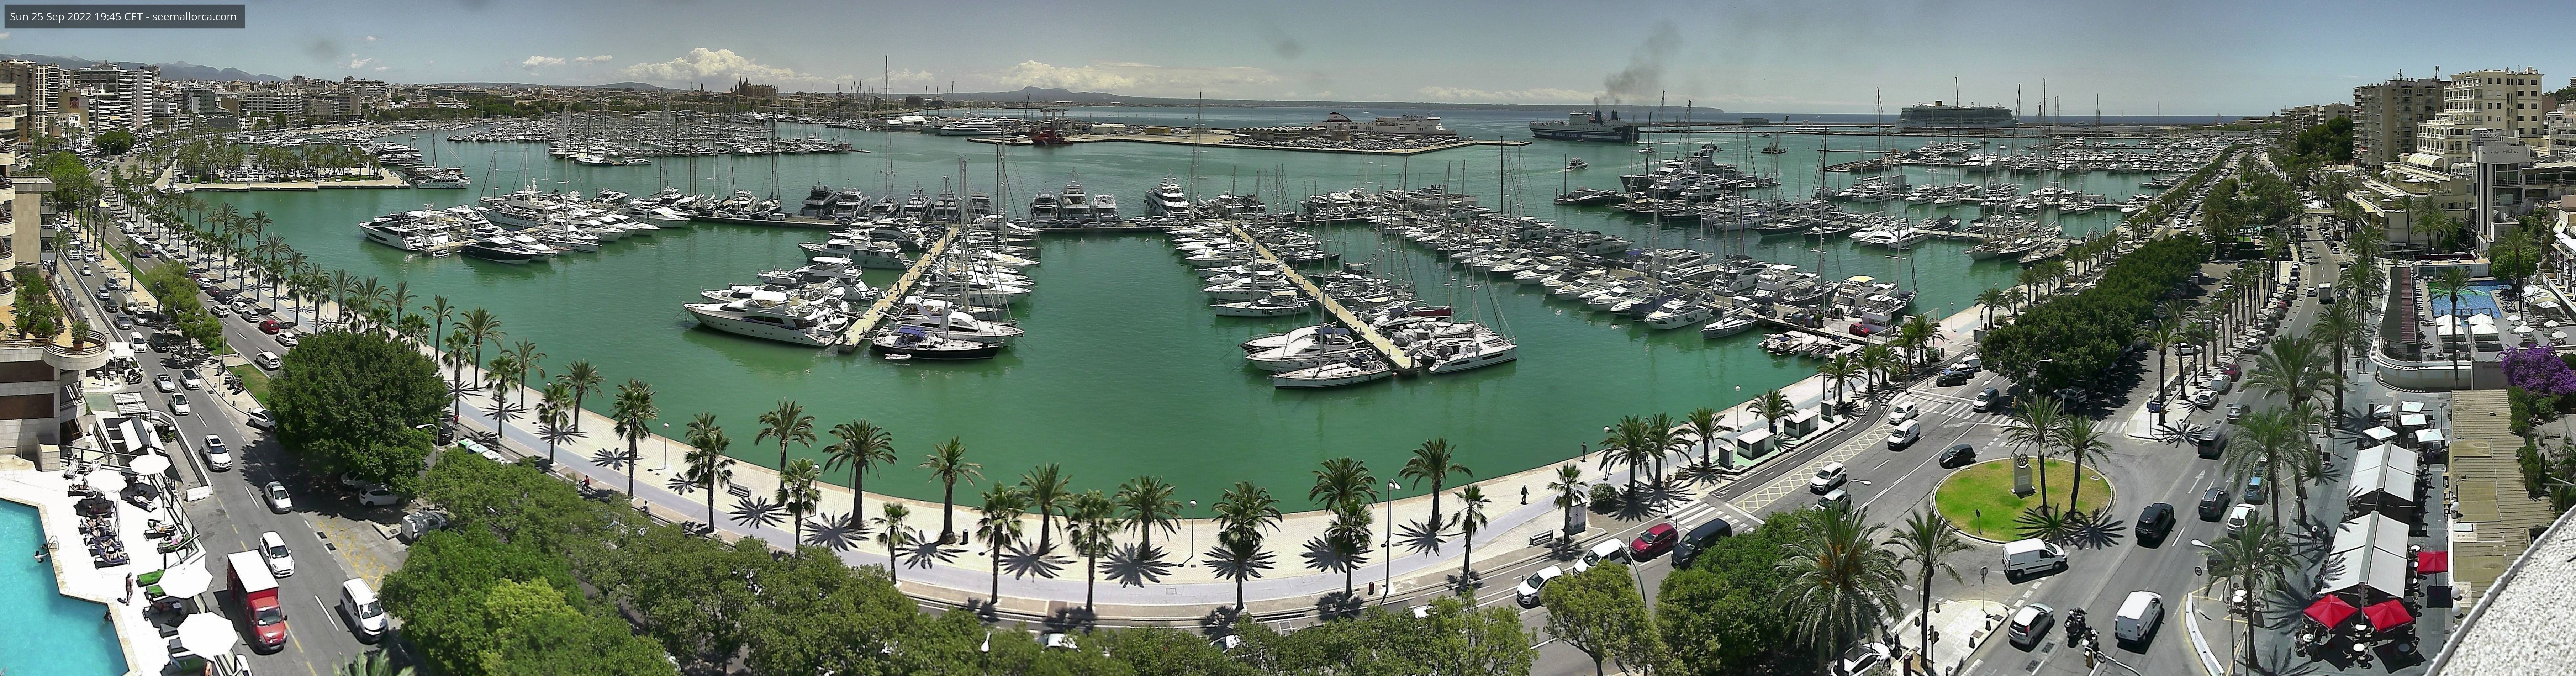 Hafen webcam Palma de Mallorca